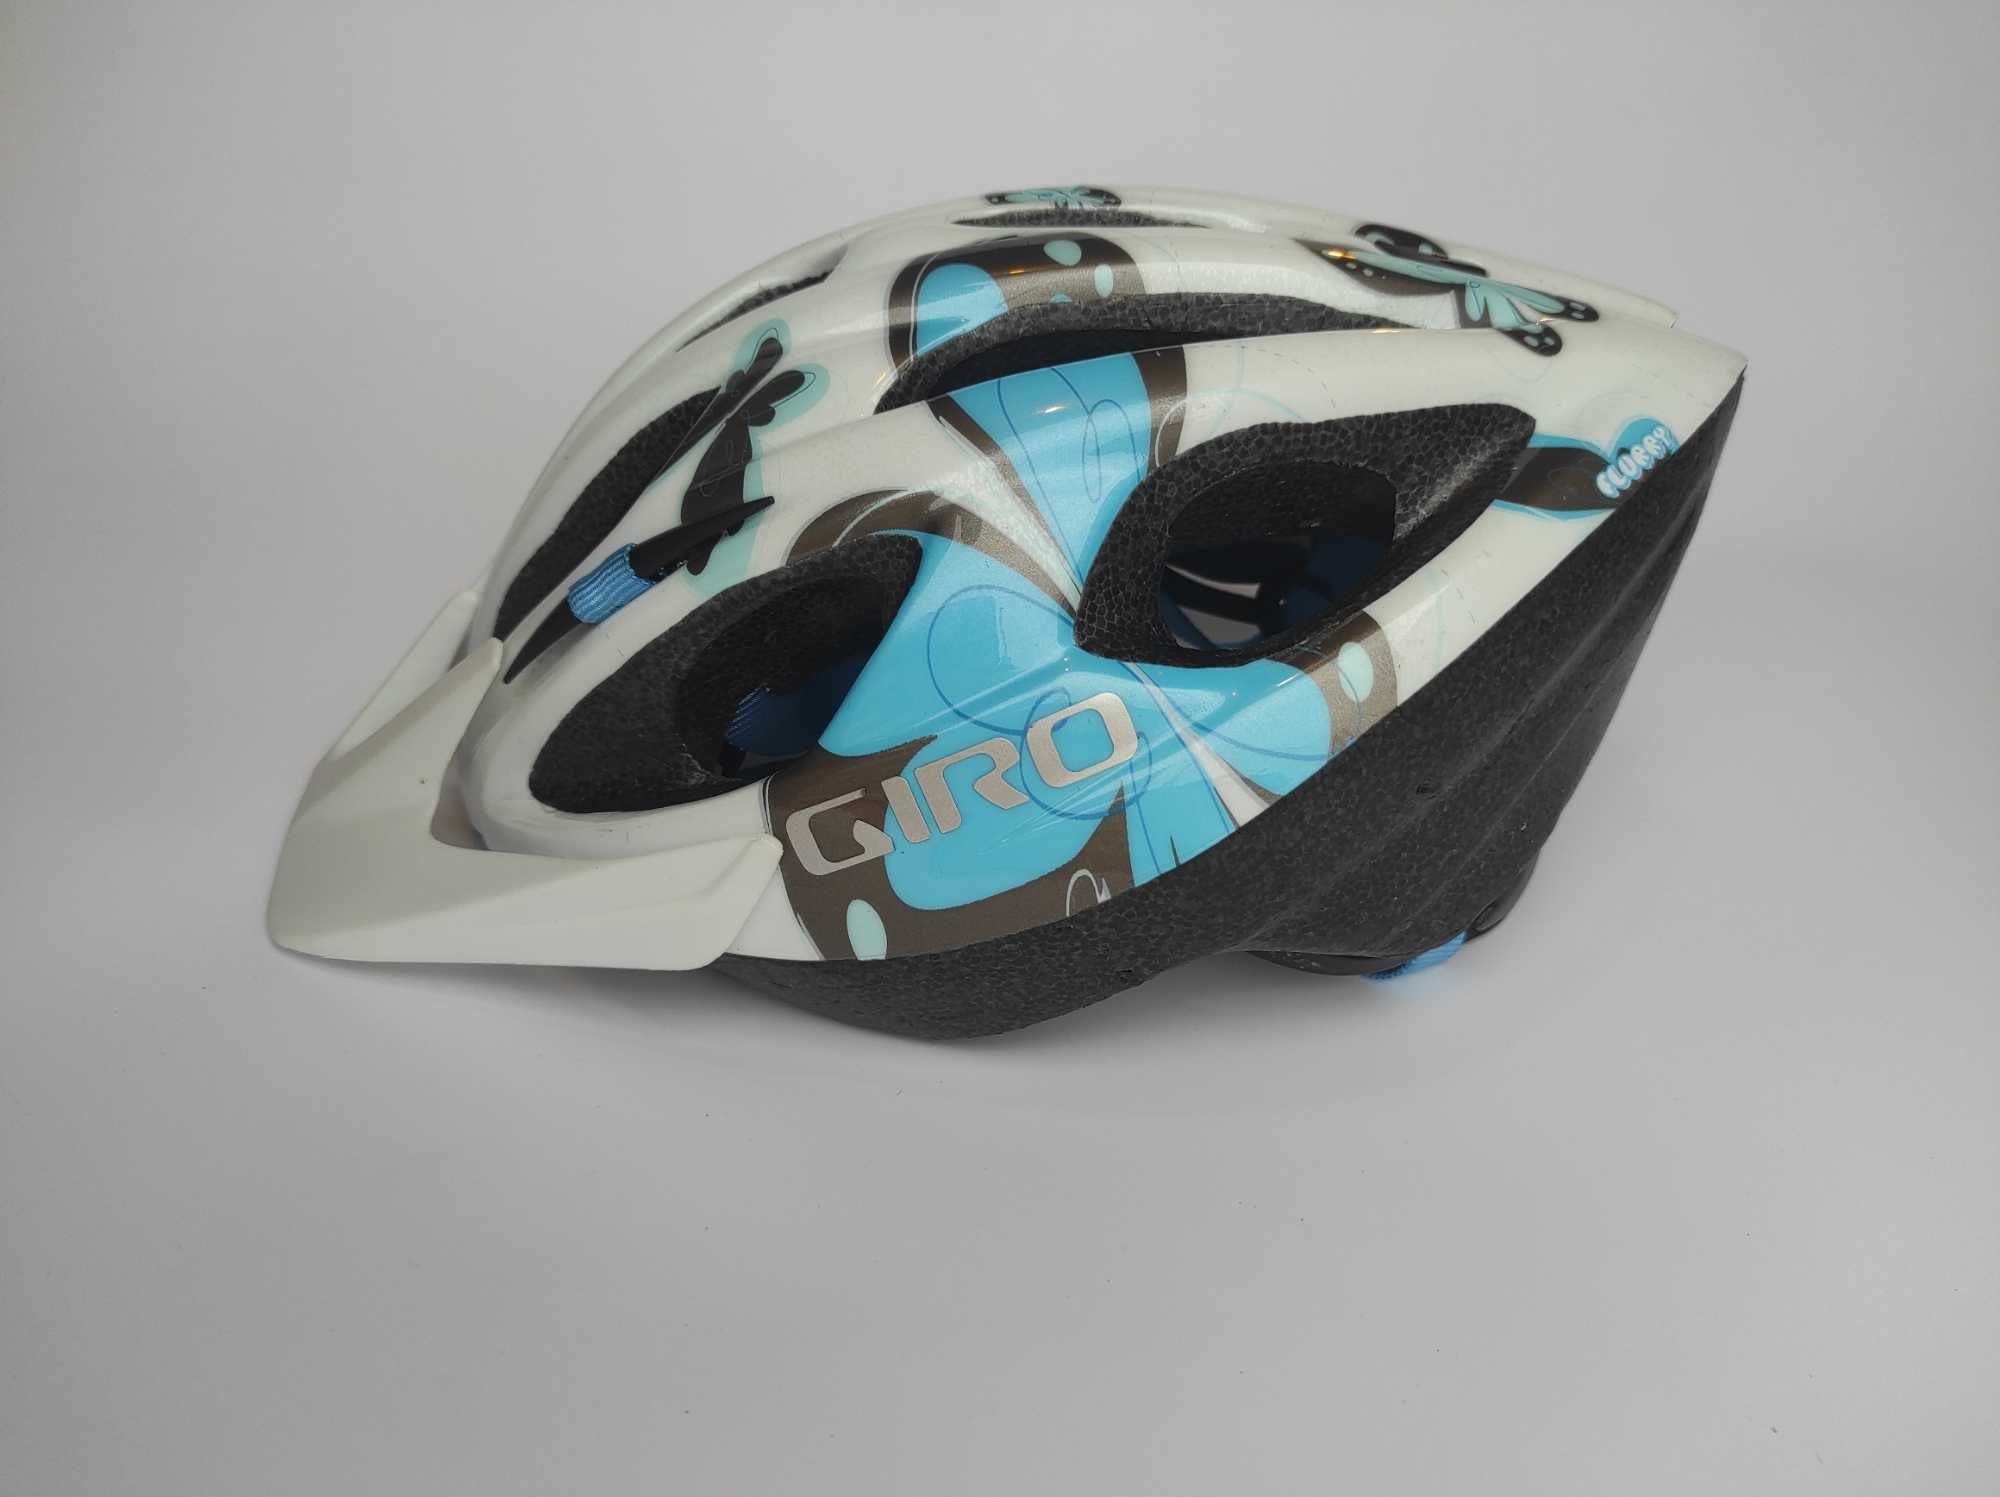 Шлем велосипедный Giro Flurry, размер 50-57см, Германия.